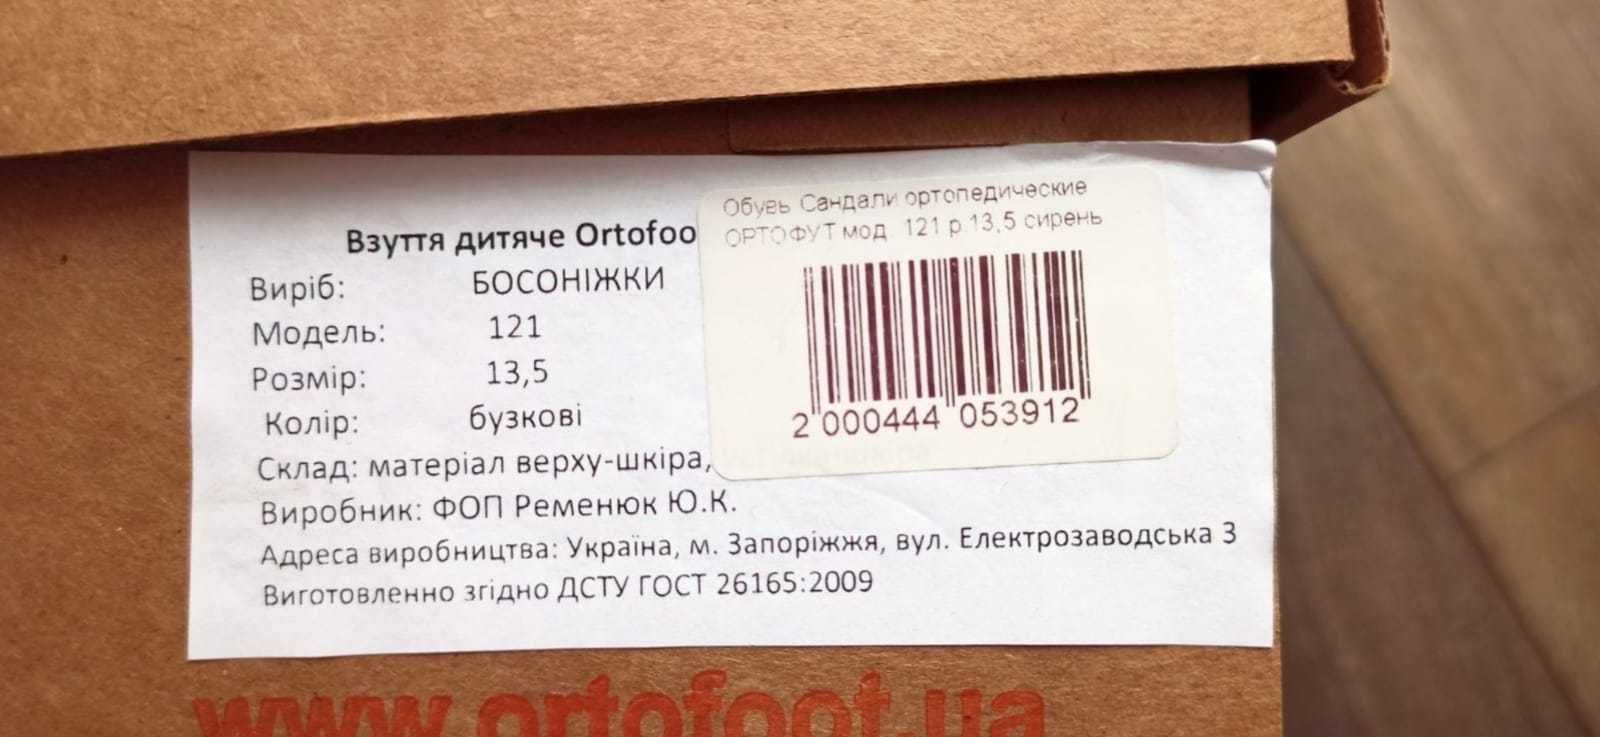 Детская ортопедическая обувь Ortofoo, размер 13.5 и 15.5